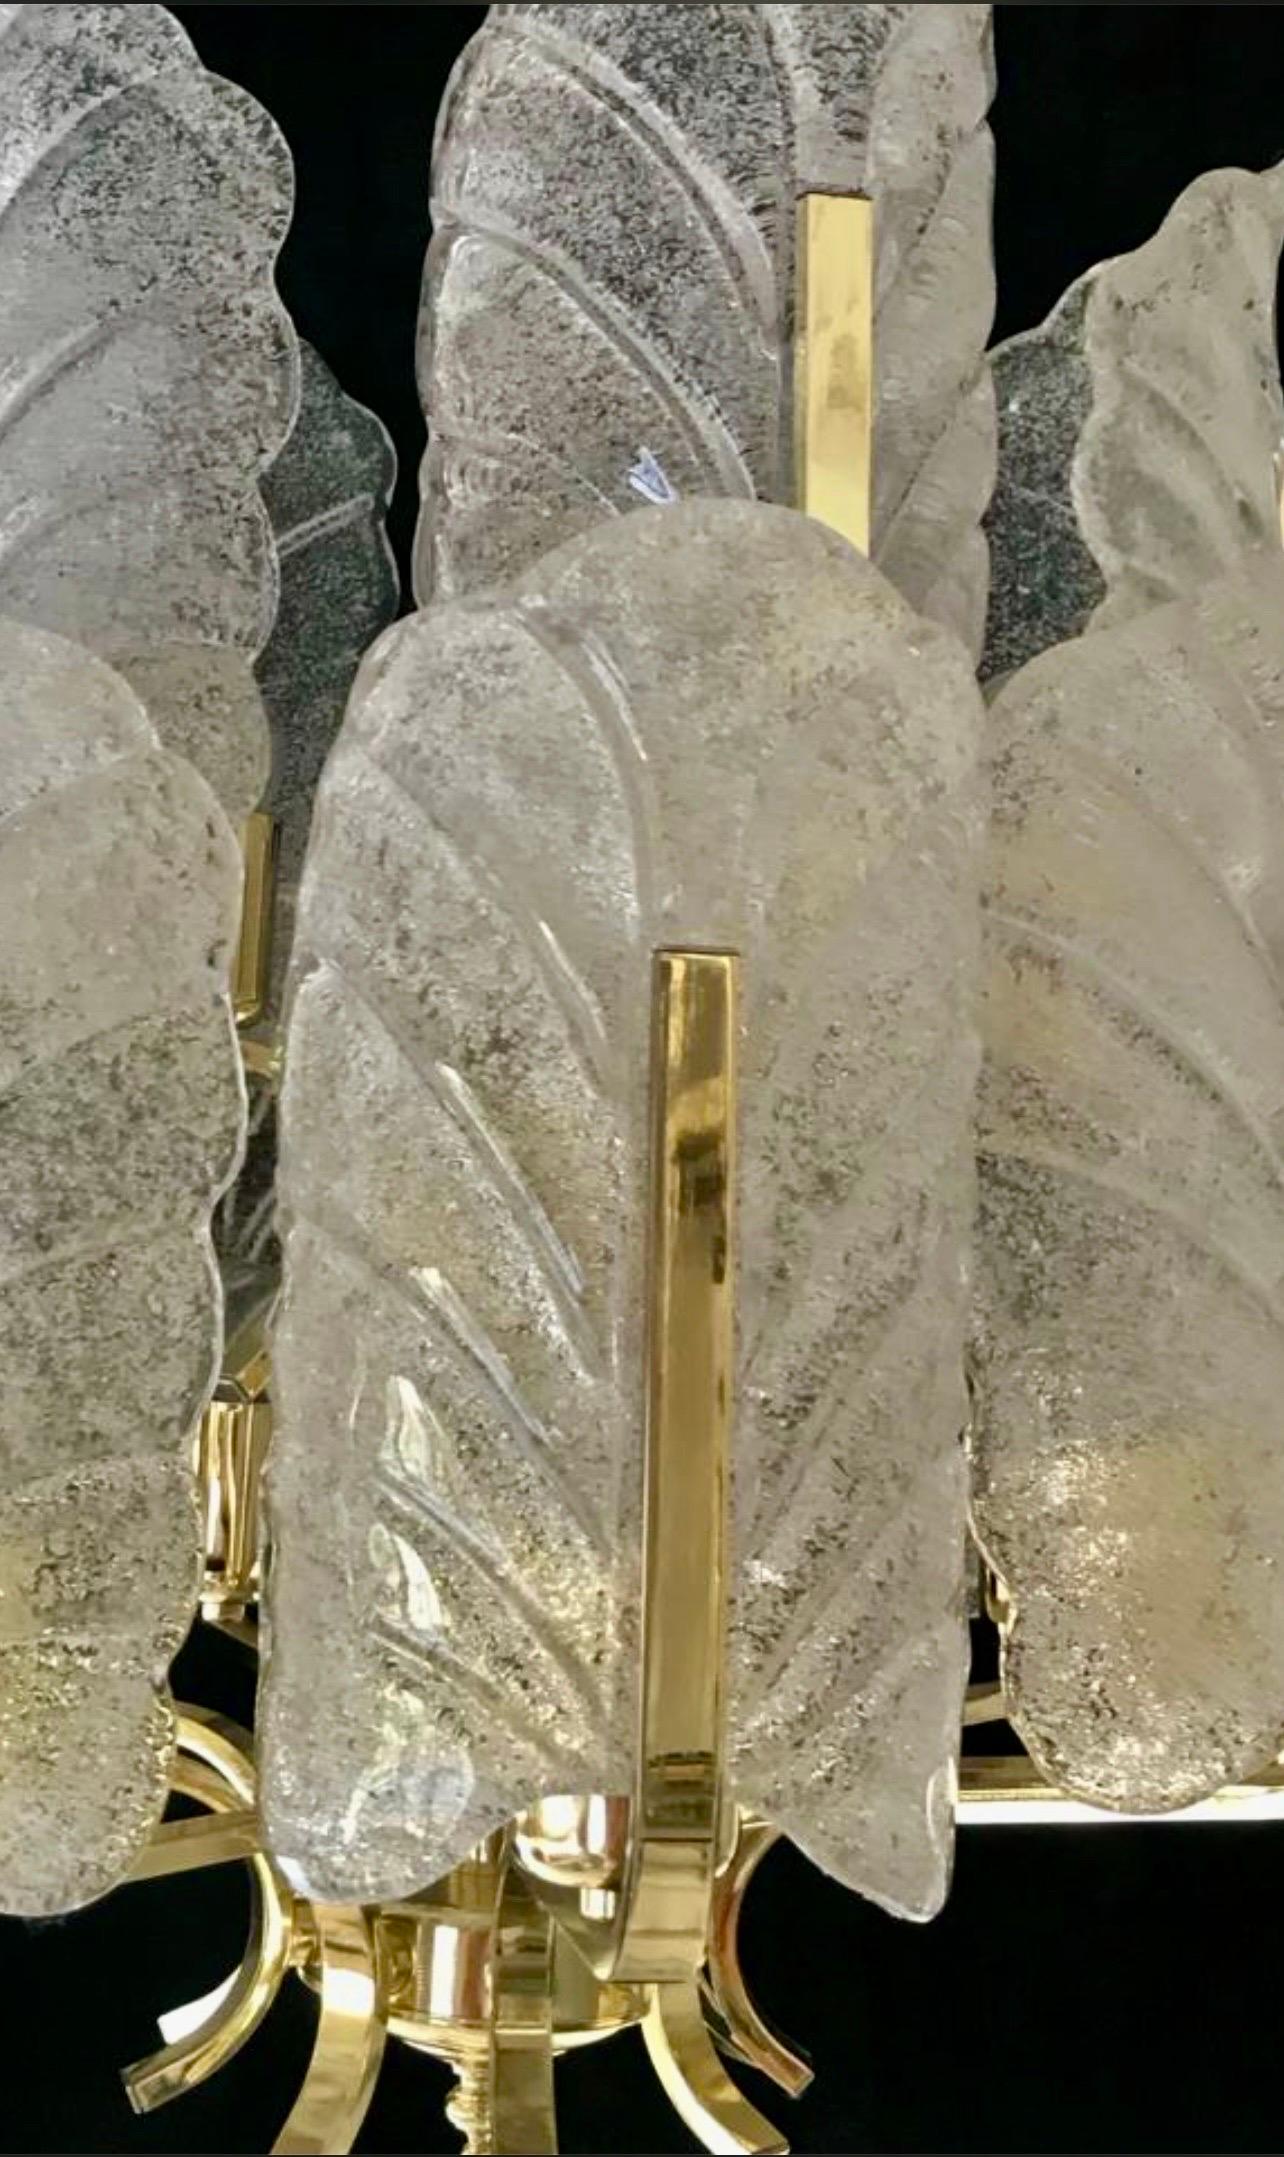 Carl Fagerlund by Orrifors Kronleuchter mit Glas aus Murano in Milchglasausführung. Sehr seltenes Modell aus Glas mit einer goldenen Messingstruktur. Eine ikonische Lampe dänischen Designs, ein einzigartiges Element für eine Atmosphäre von großem